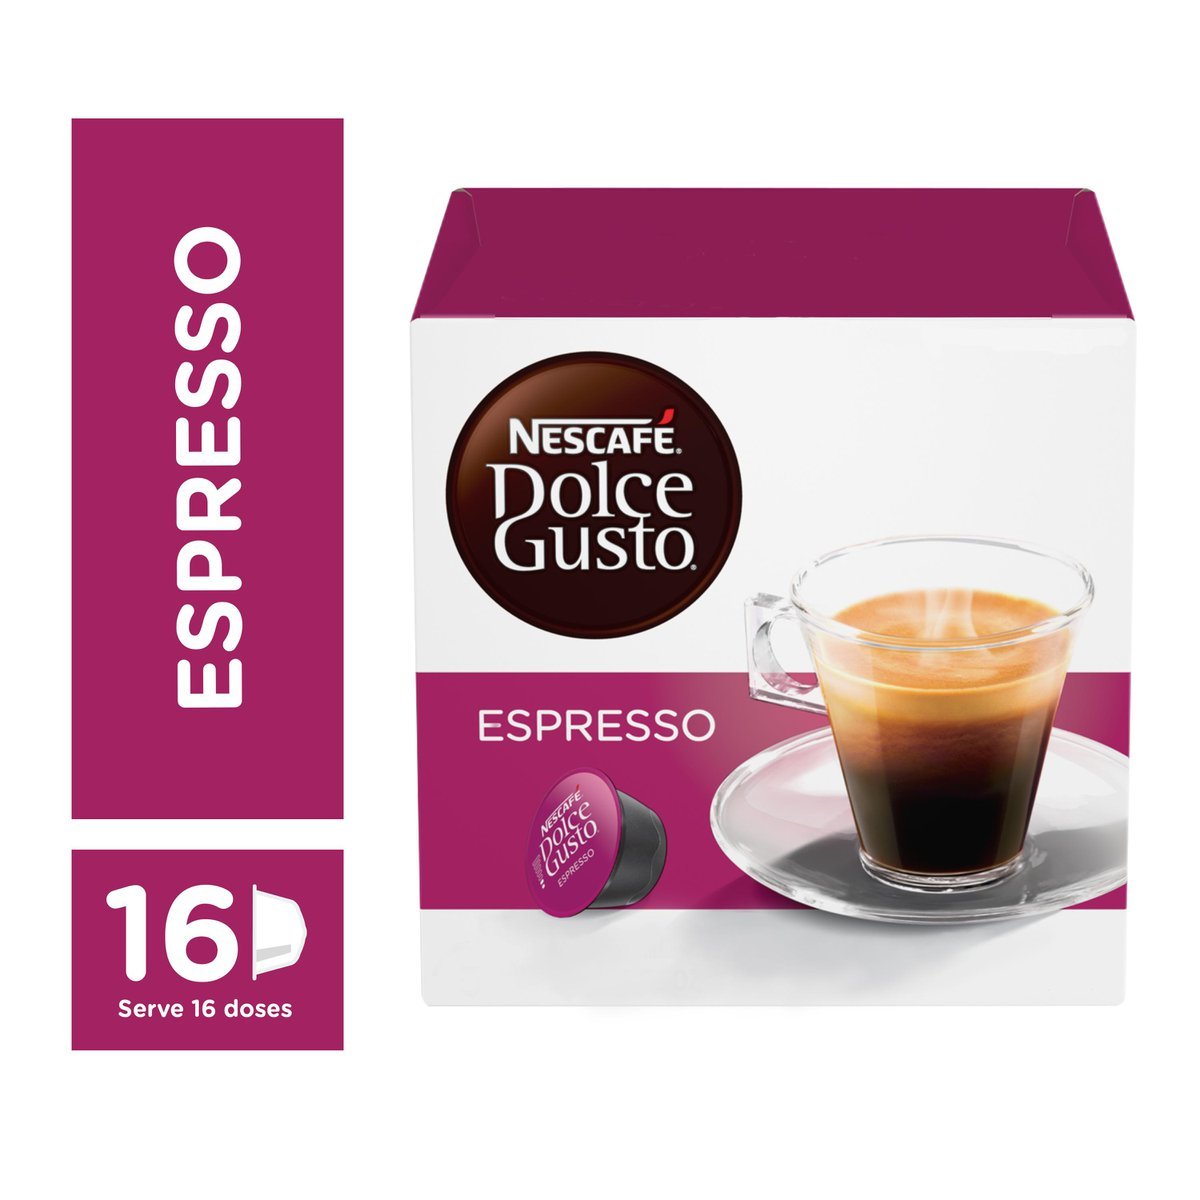 Espresso dolce. Nescafe Dolce gusto Espresso. Dolce gusto Espresso. Nescafe Espresso. Адаптер Дольче густо на эспрессо.